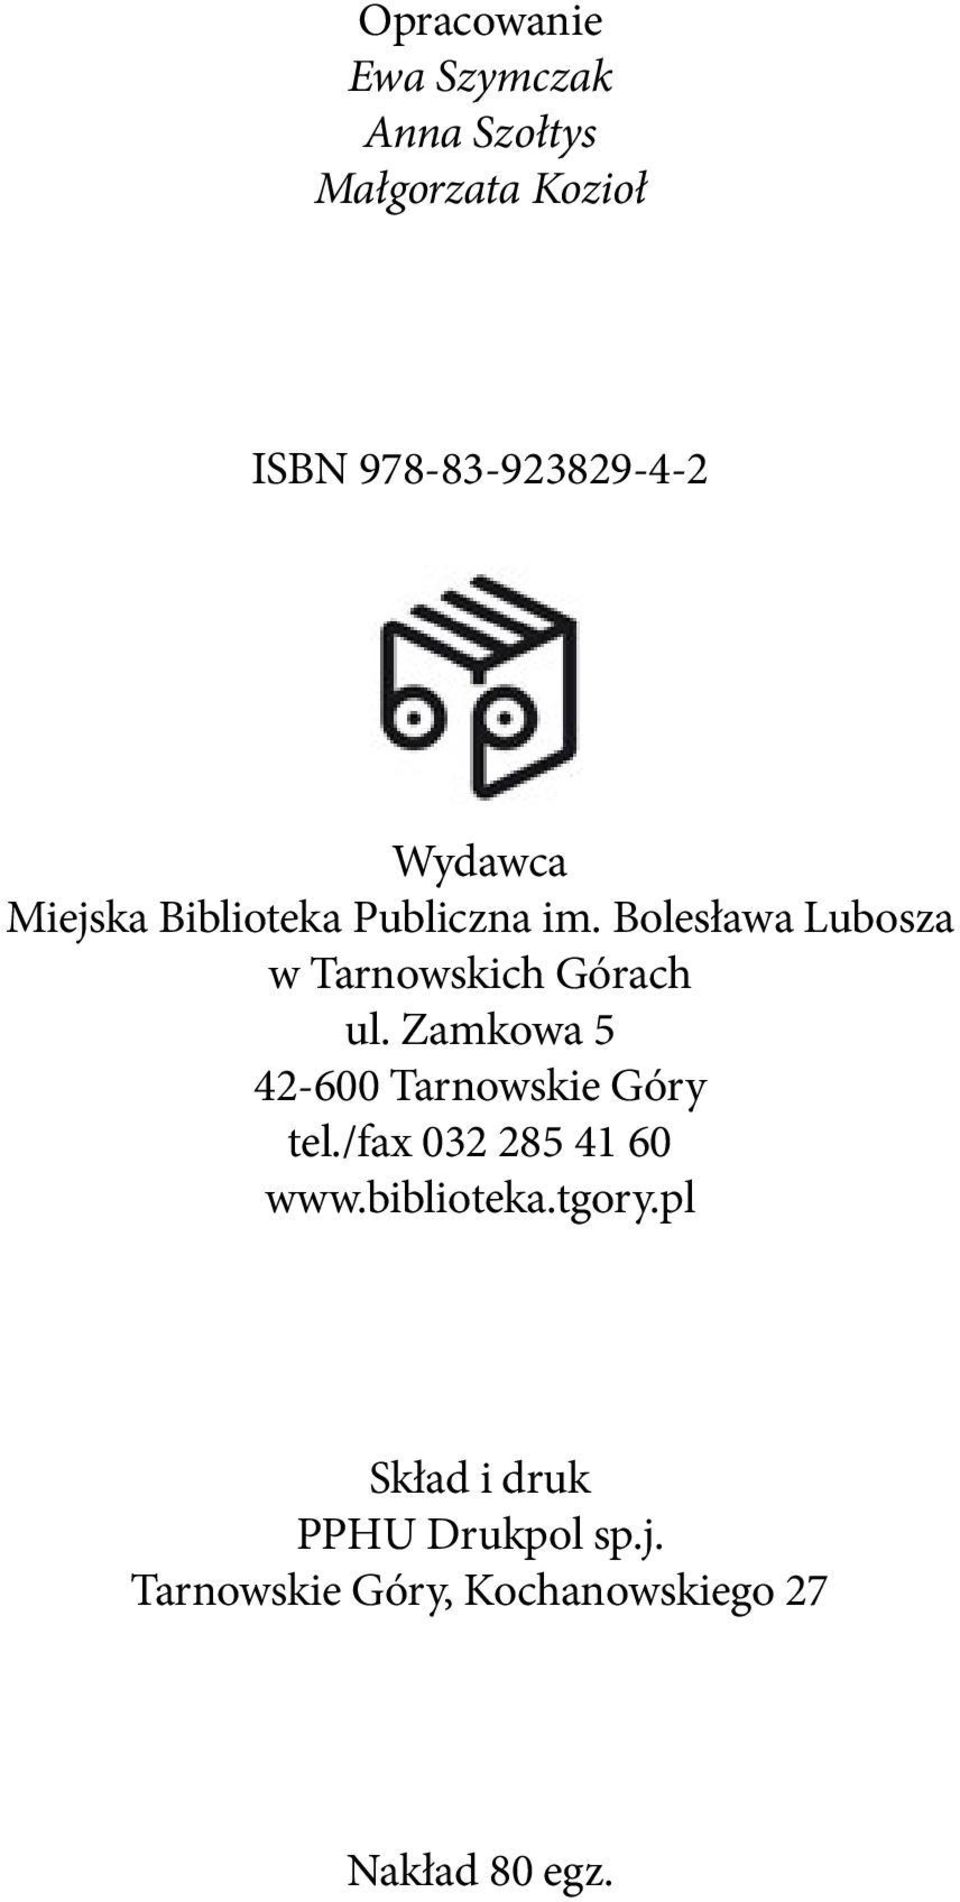 Bolesława Lubosza w Tarnowskich Górach ul. Zamkowa 5 42-600 Tarnowskie Góry tel.